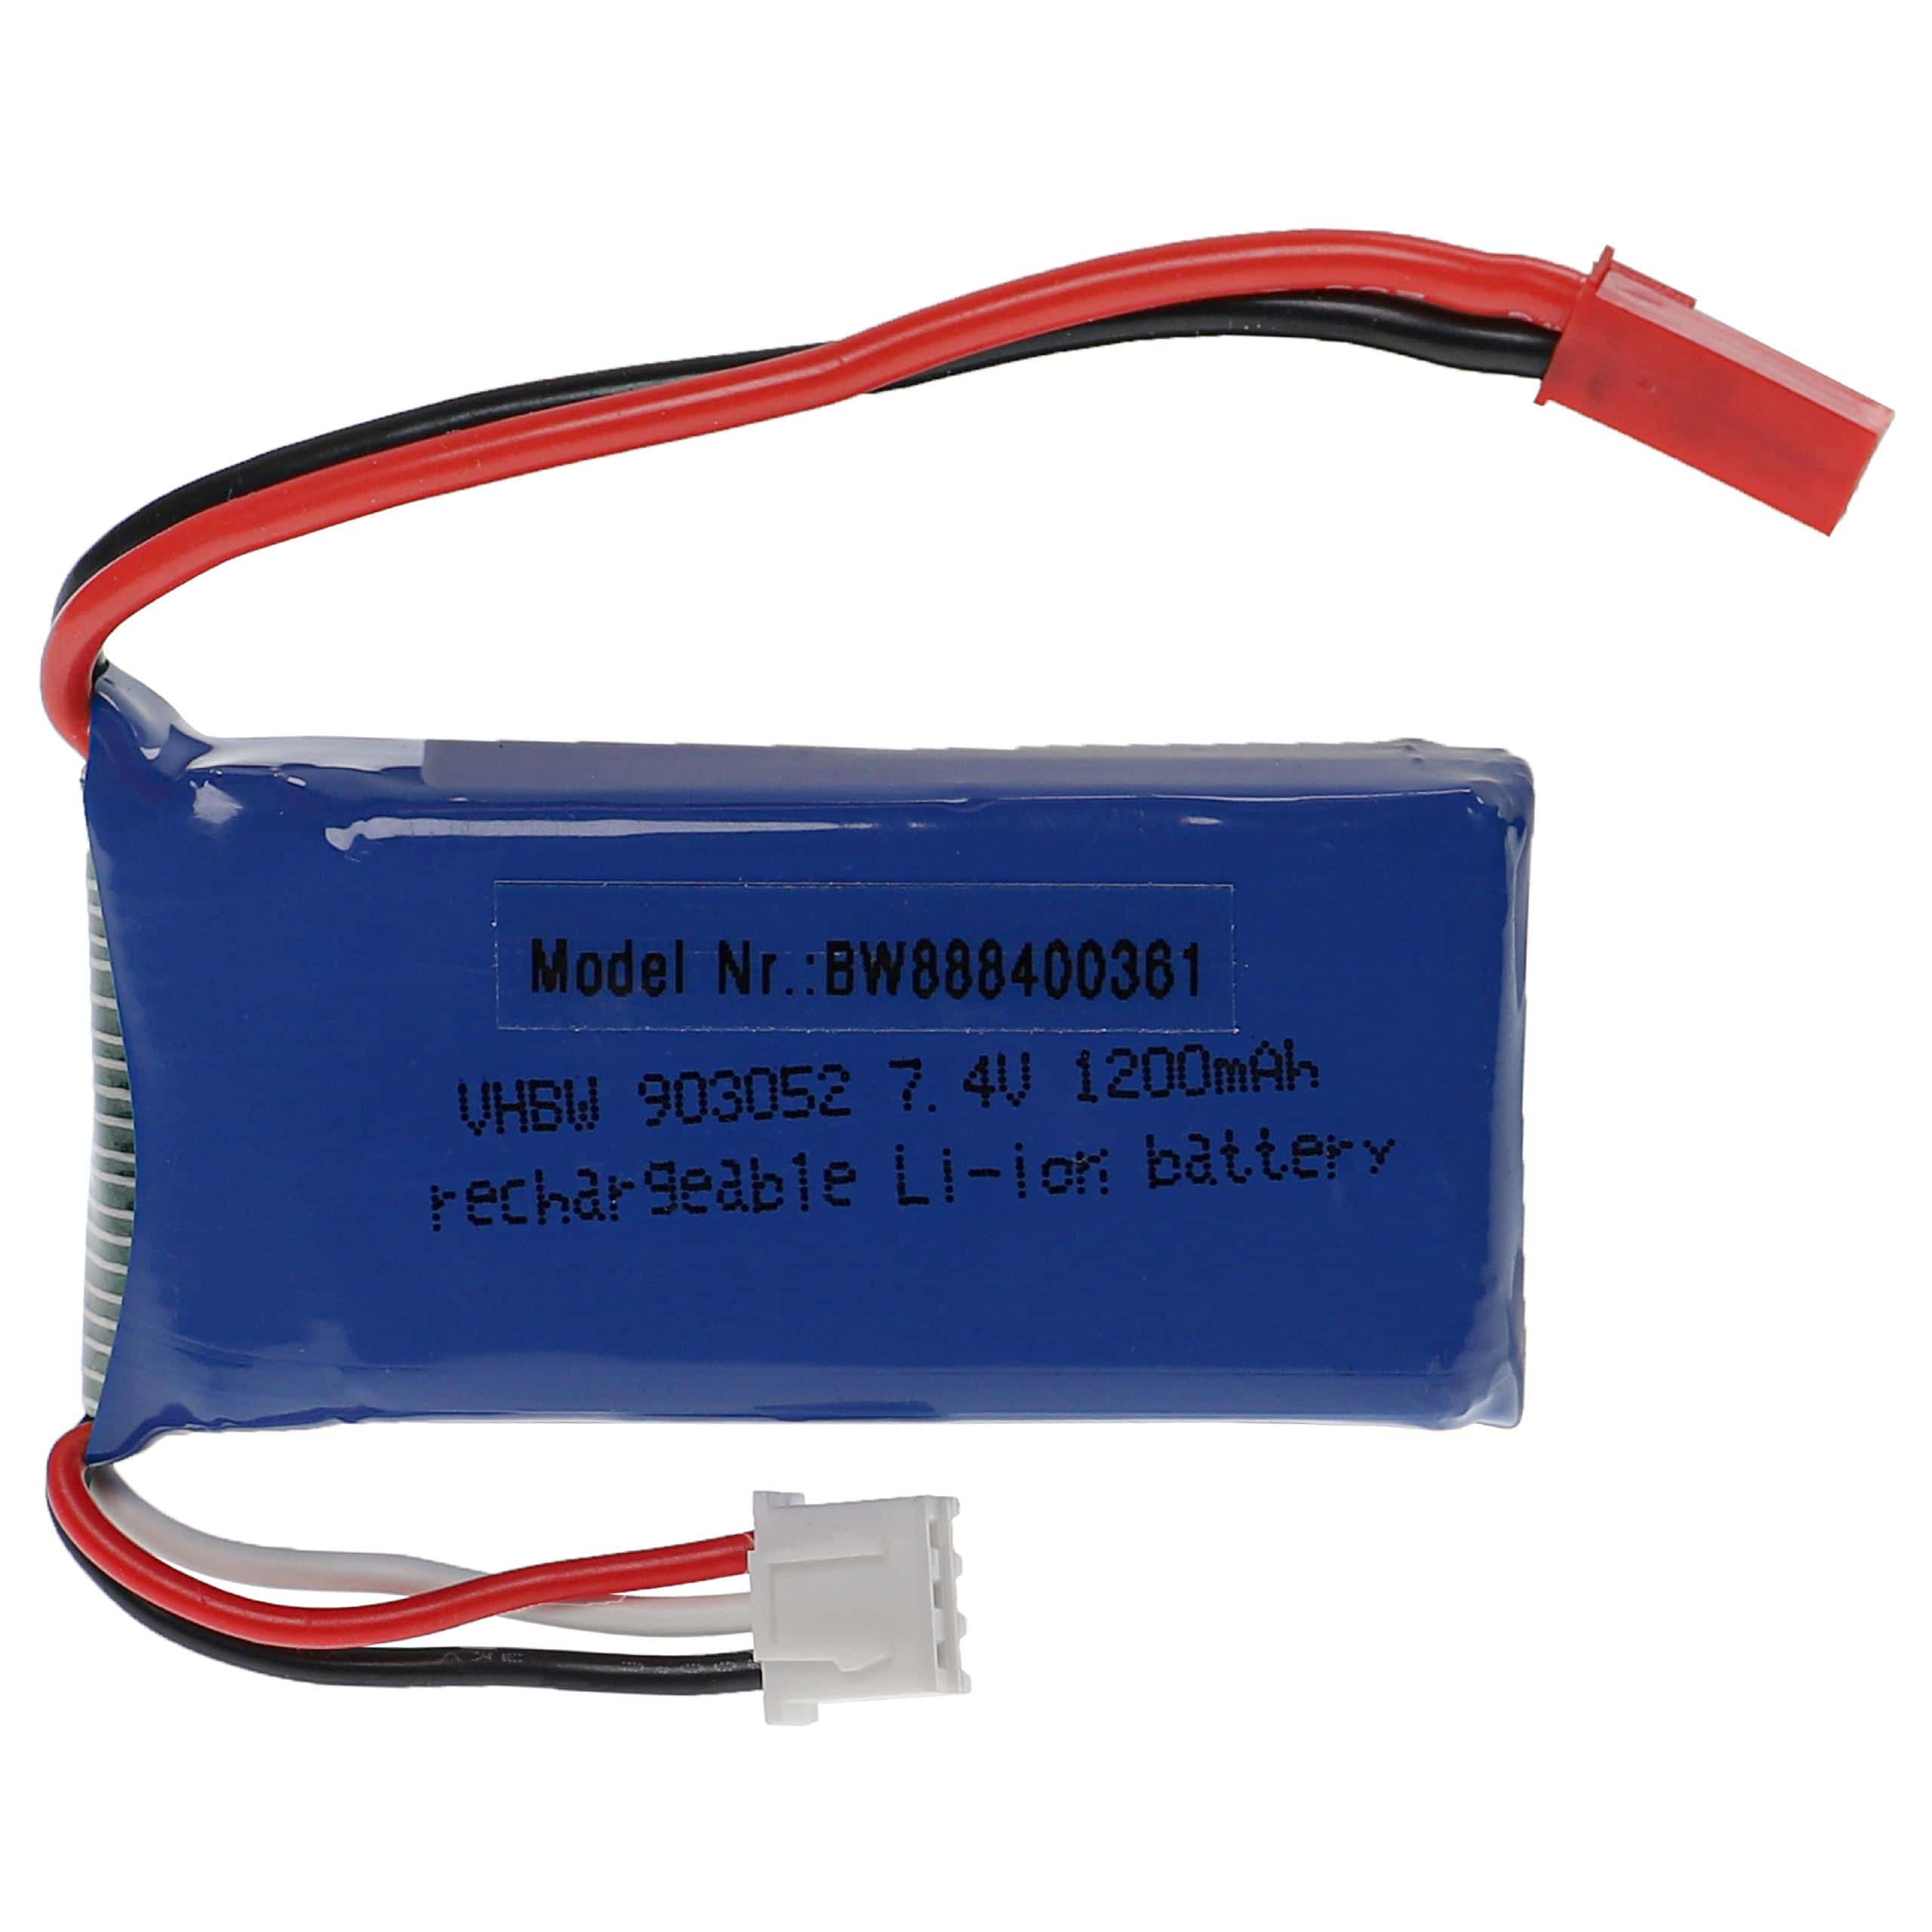 Batería para dispositivos modelismo - 1200 mAh 7,4 V Li-poli, BEC